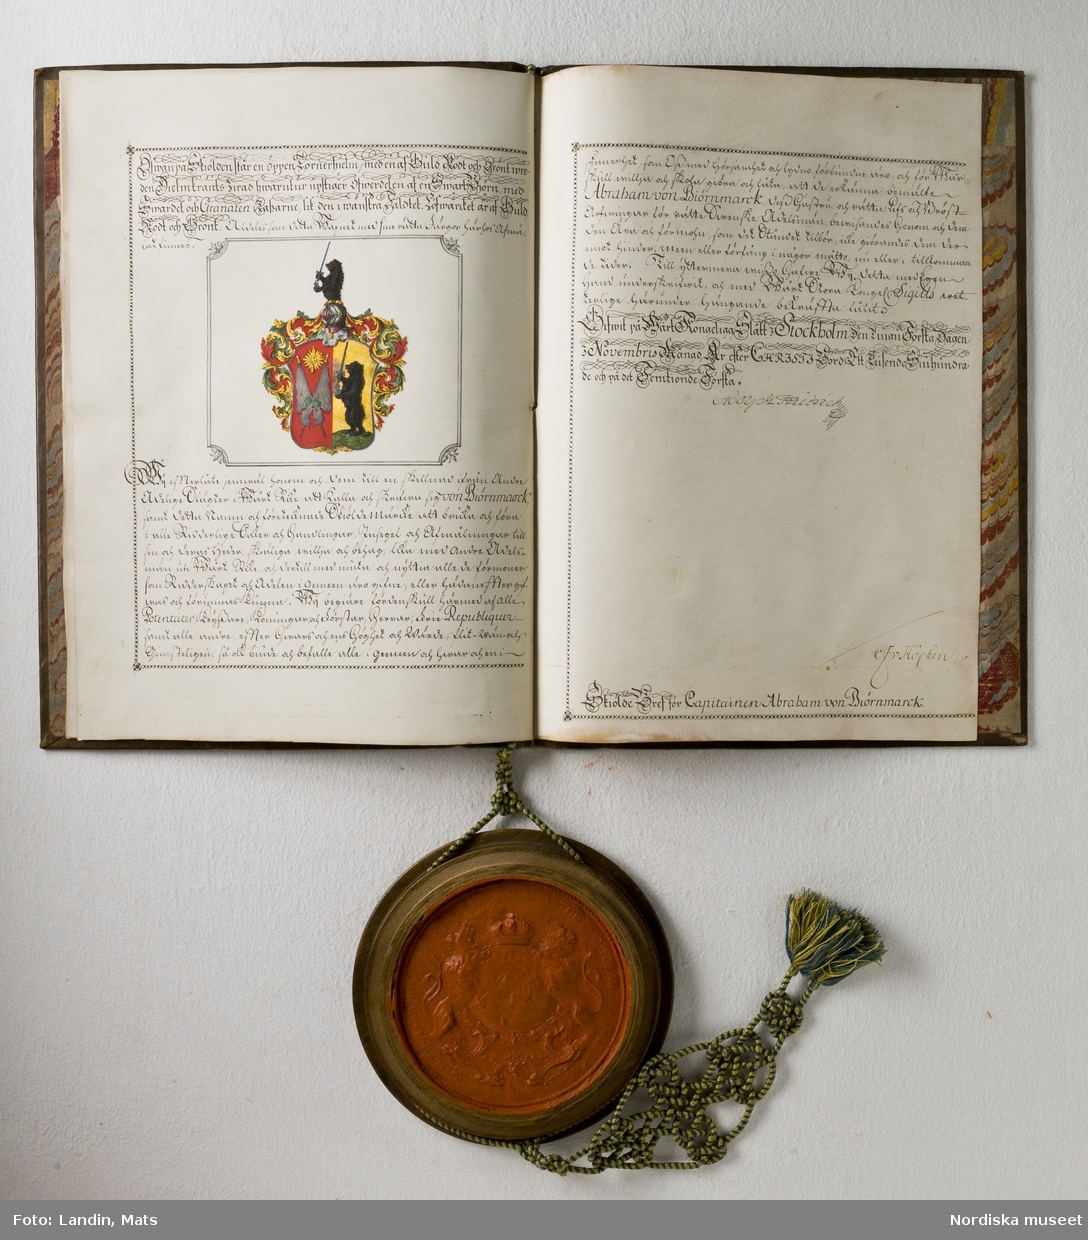 Adelsbrev för kapten Abraham von Björnmarck signerat 1751 av Adolf Fredrik. Sköldebrev. Fyra pergamentsblad, brunt skinnband med guldprägling. Sigill i träkapsel.